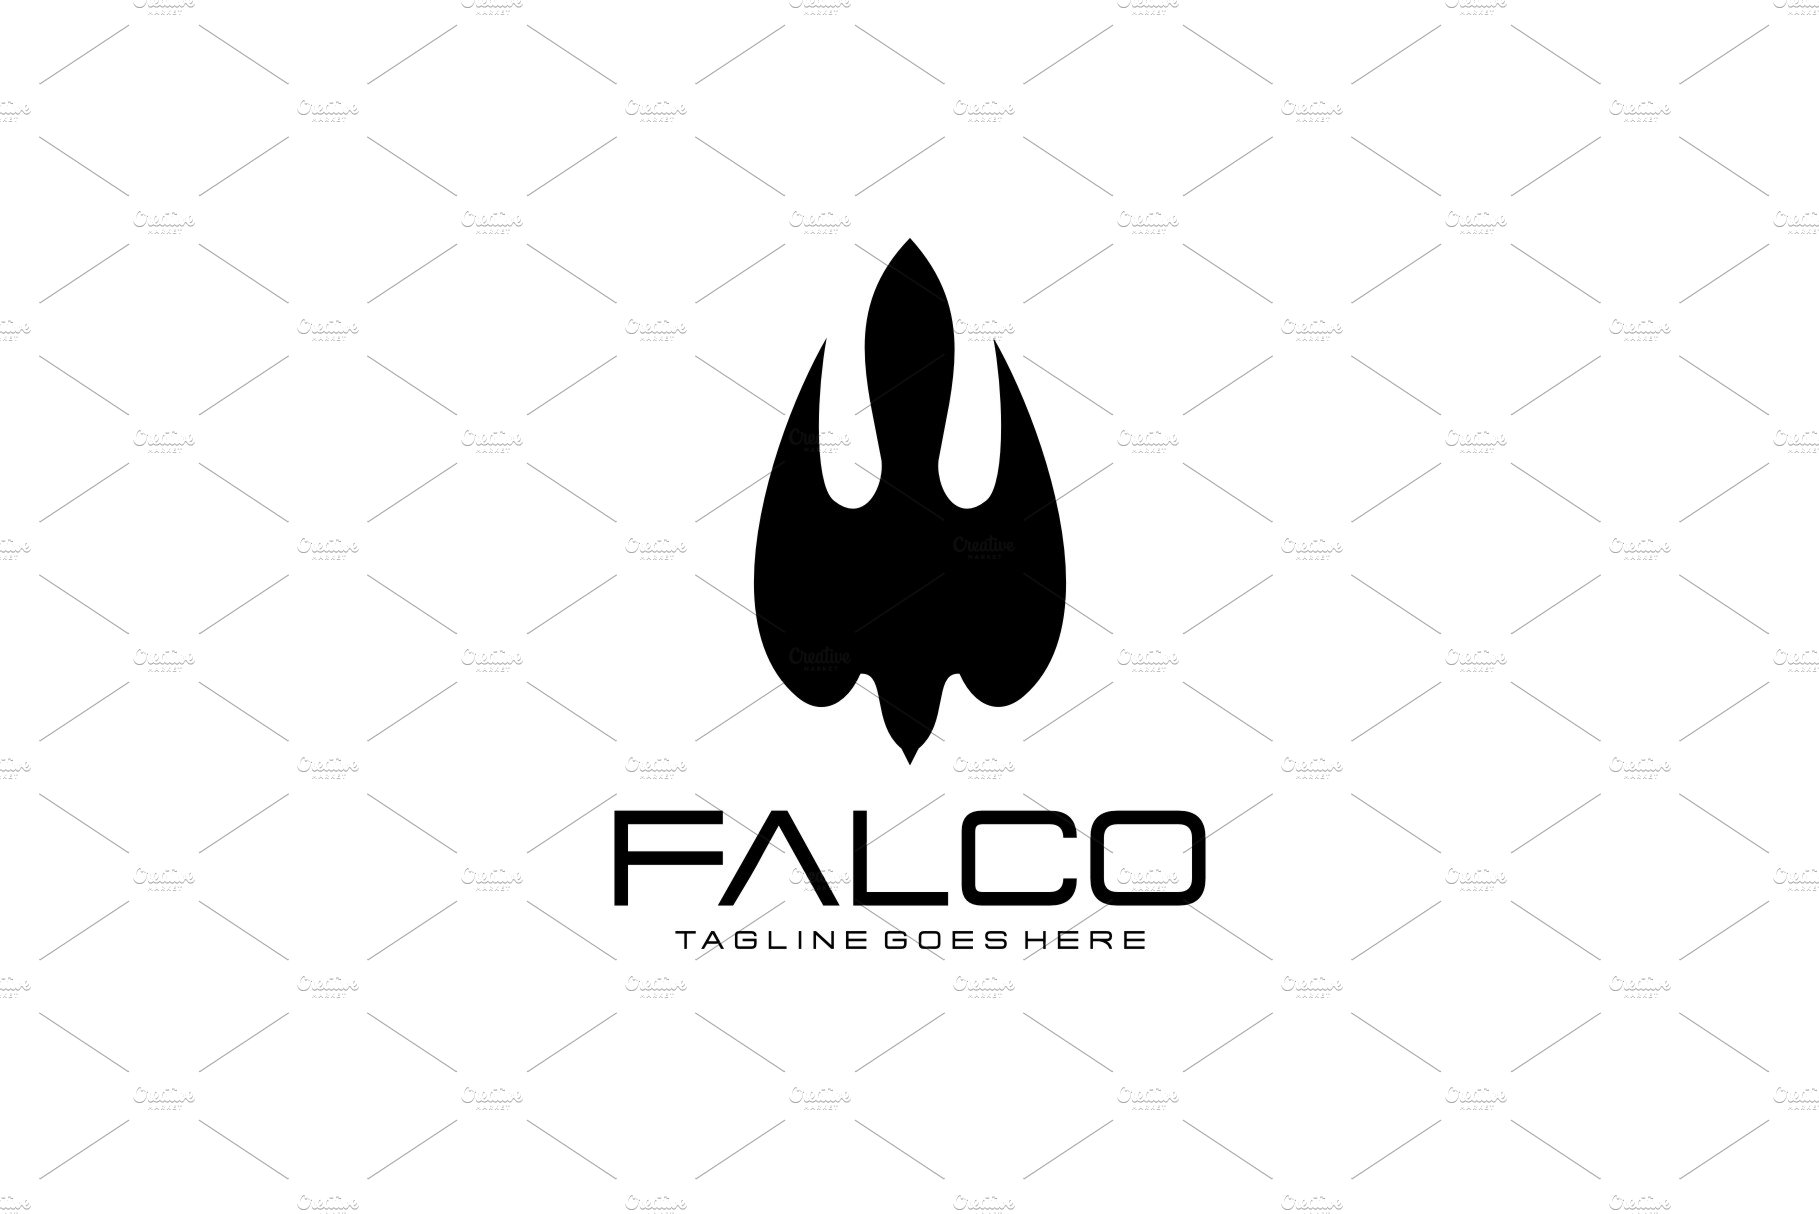 falco 2 832